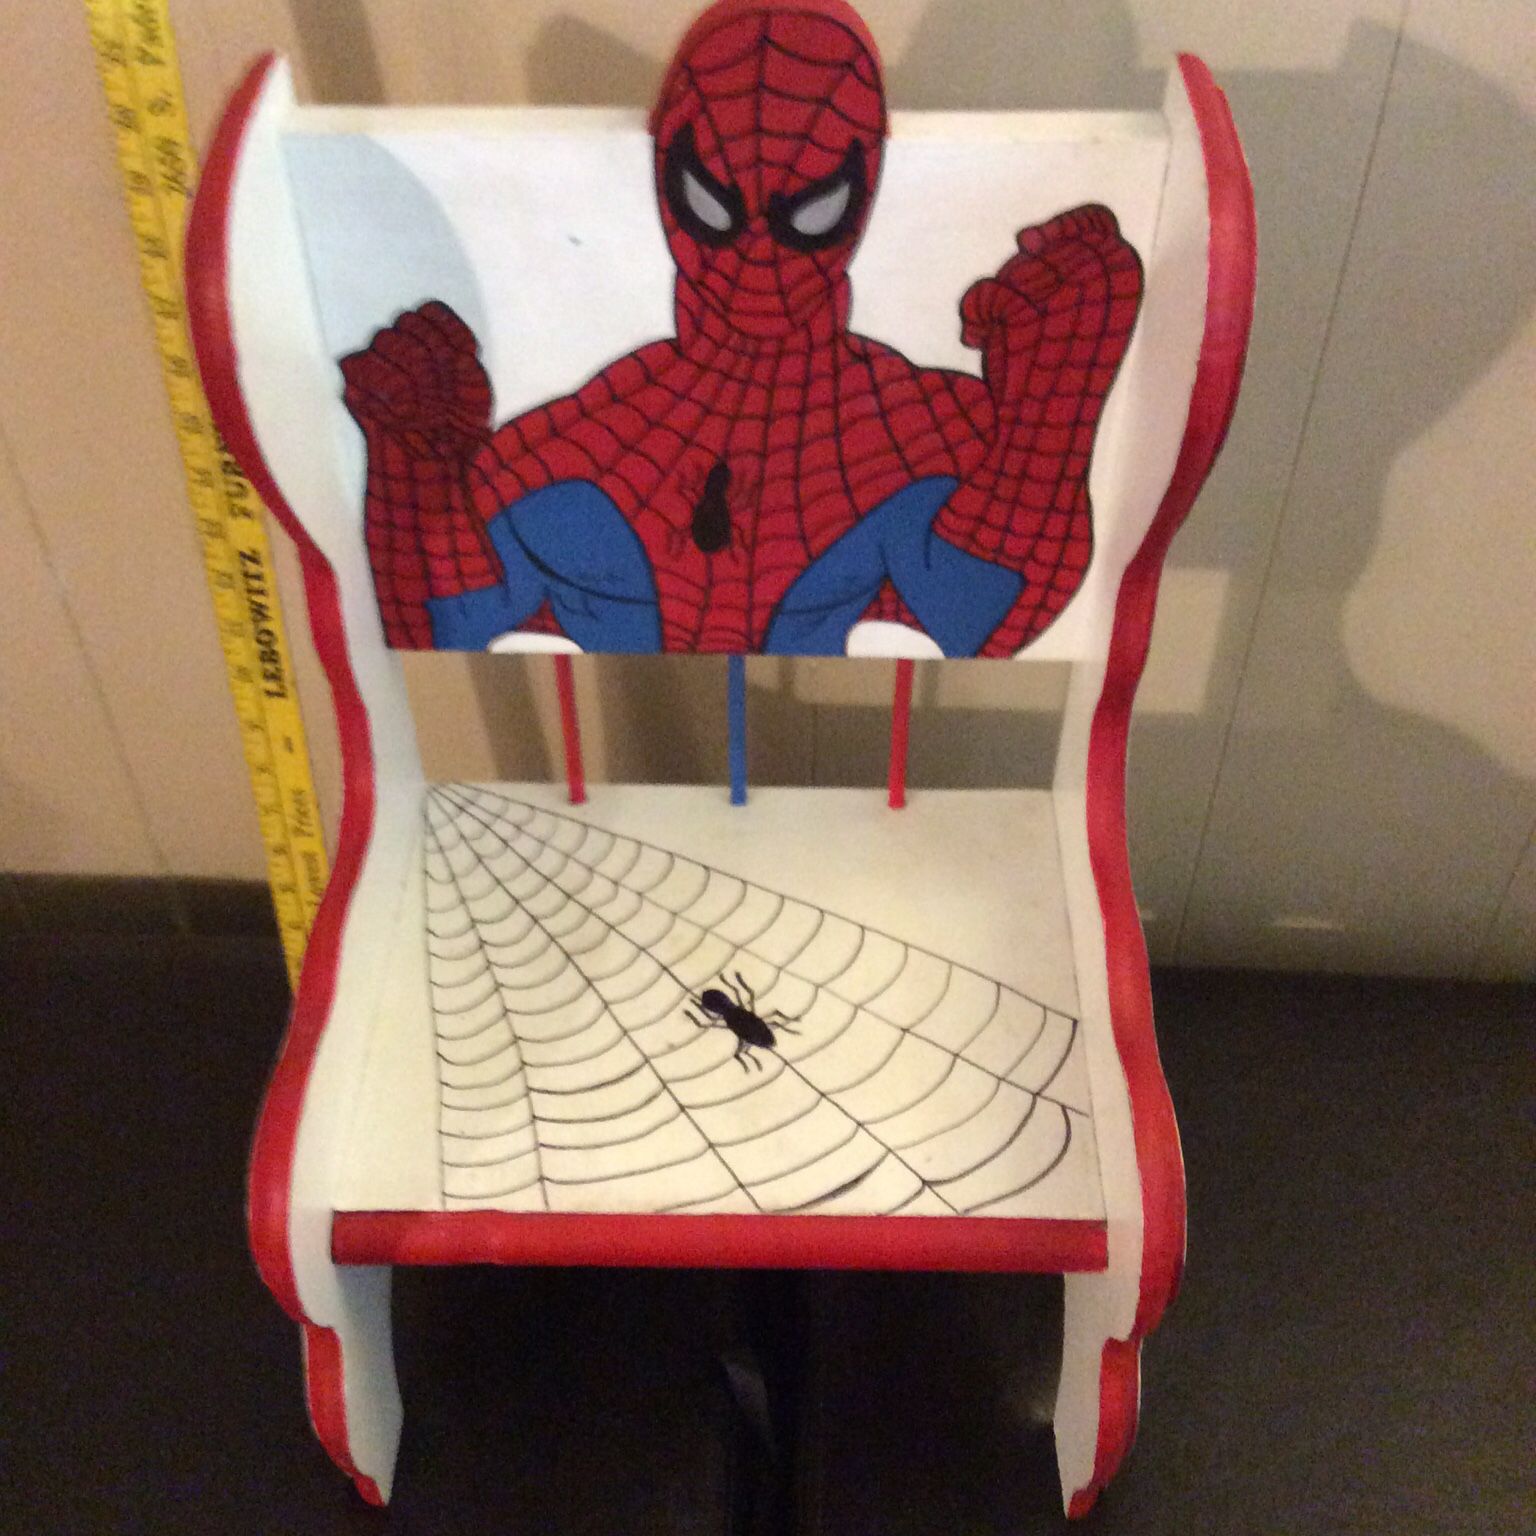 Amazing Spider-Man Handmade Toddler’s Wooden Chair